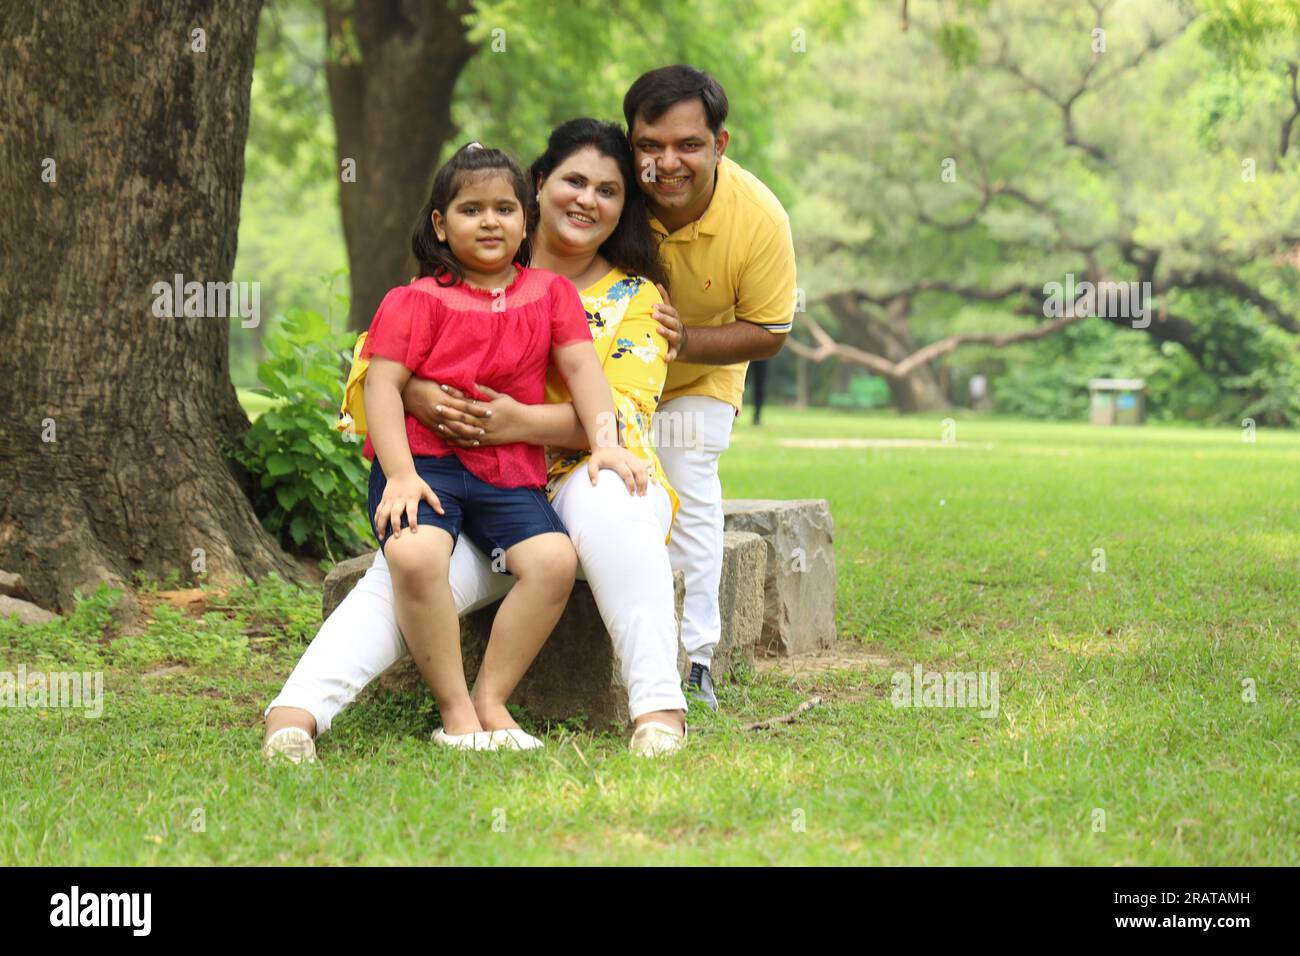 Glückliche indische Familie mit einem Mädchen, das zusammen auf dem Gras sitzt und ihre Familienzeit am frühen Morgen genießt. Die Familie schaut in die Kamera. Stockfoto